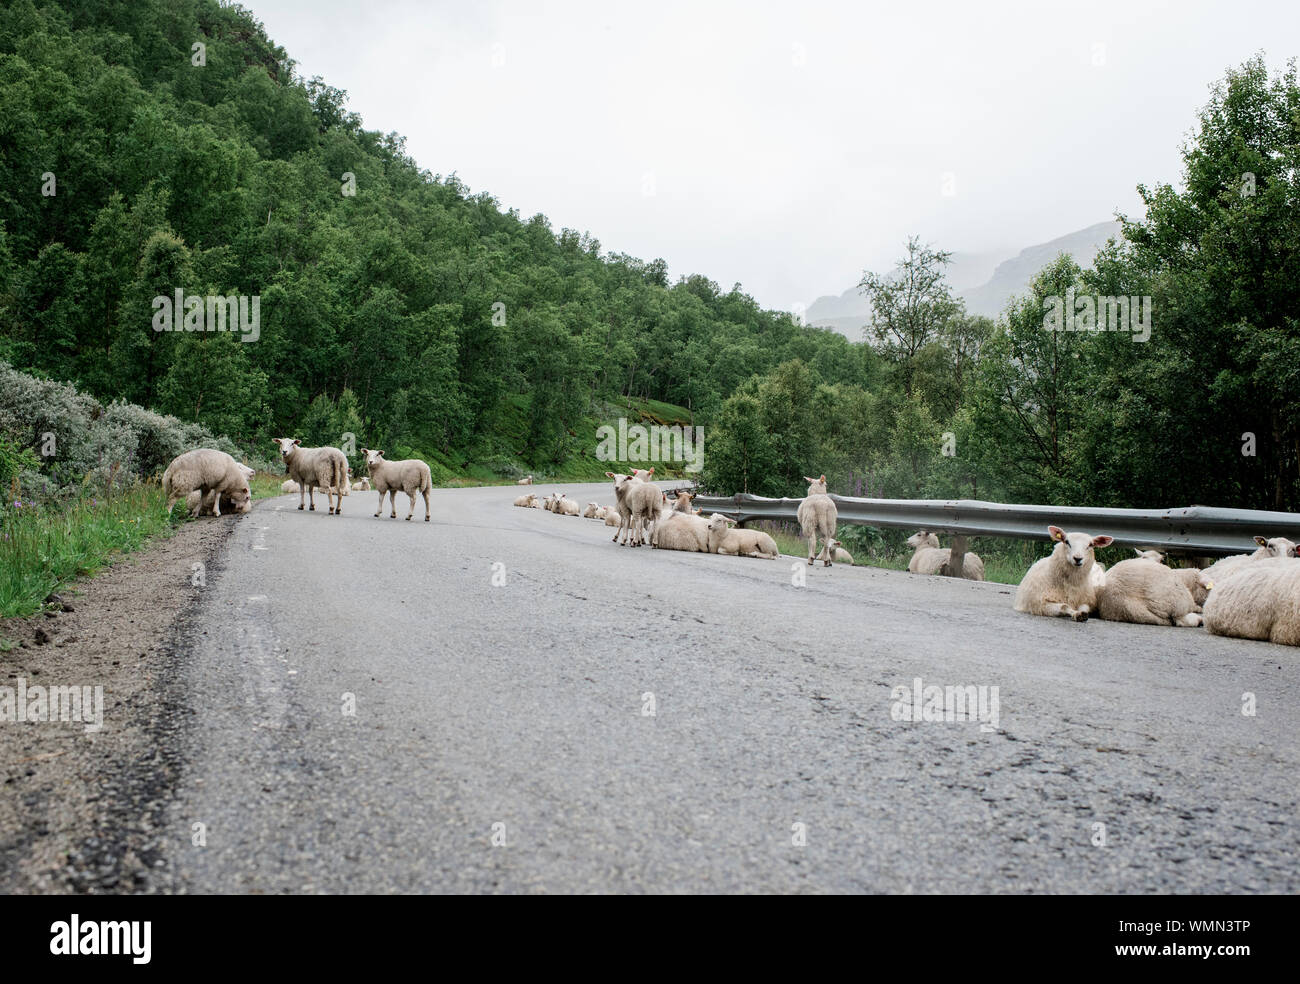 Abseits der Straße der wilde Schafe in einem Fjord in keineswegs abträgig Stockfoto